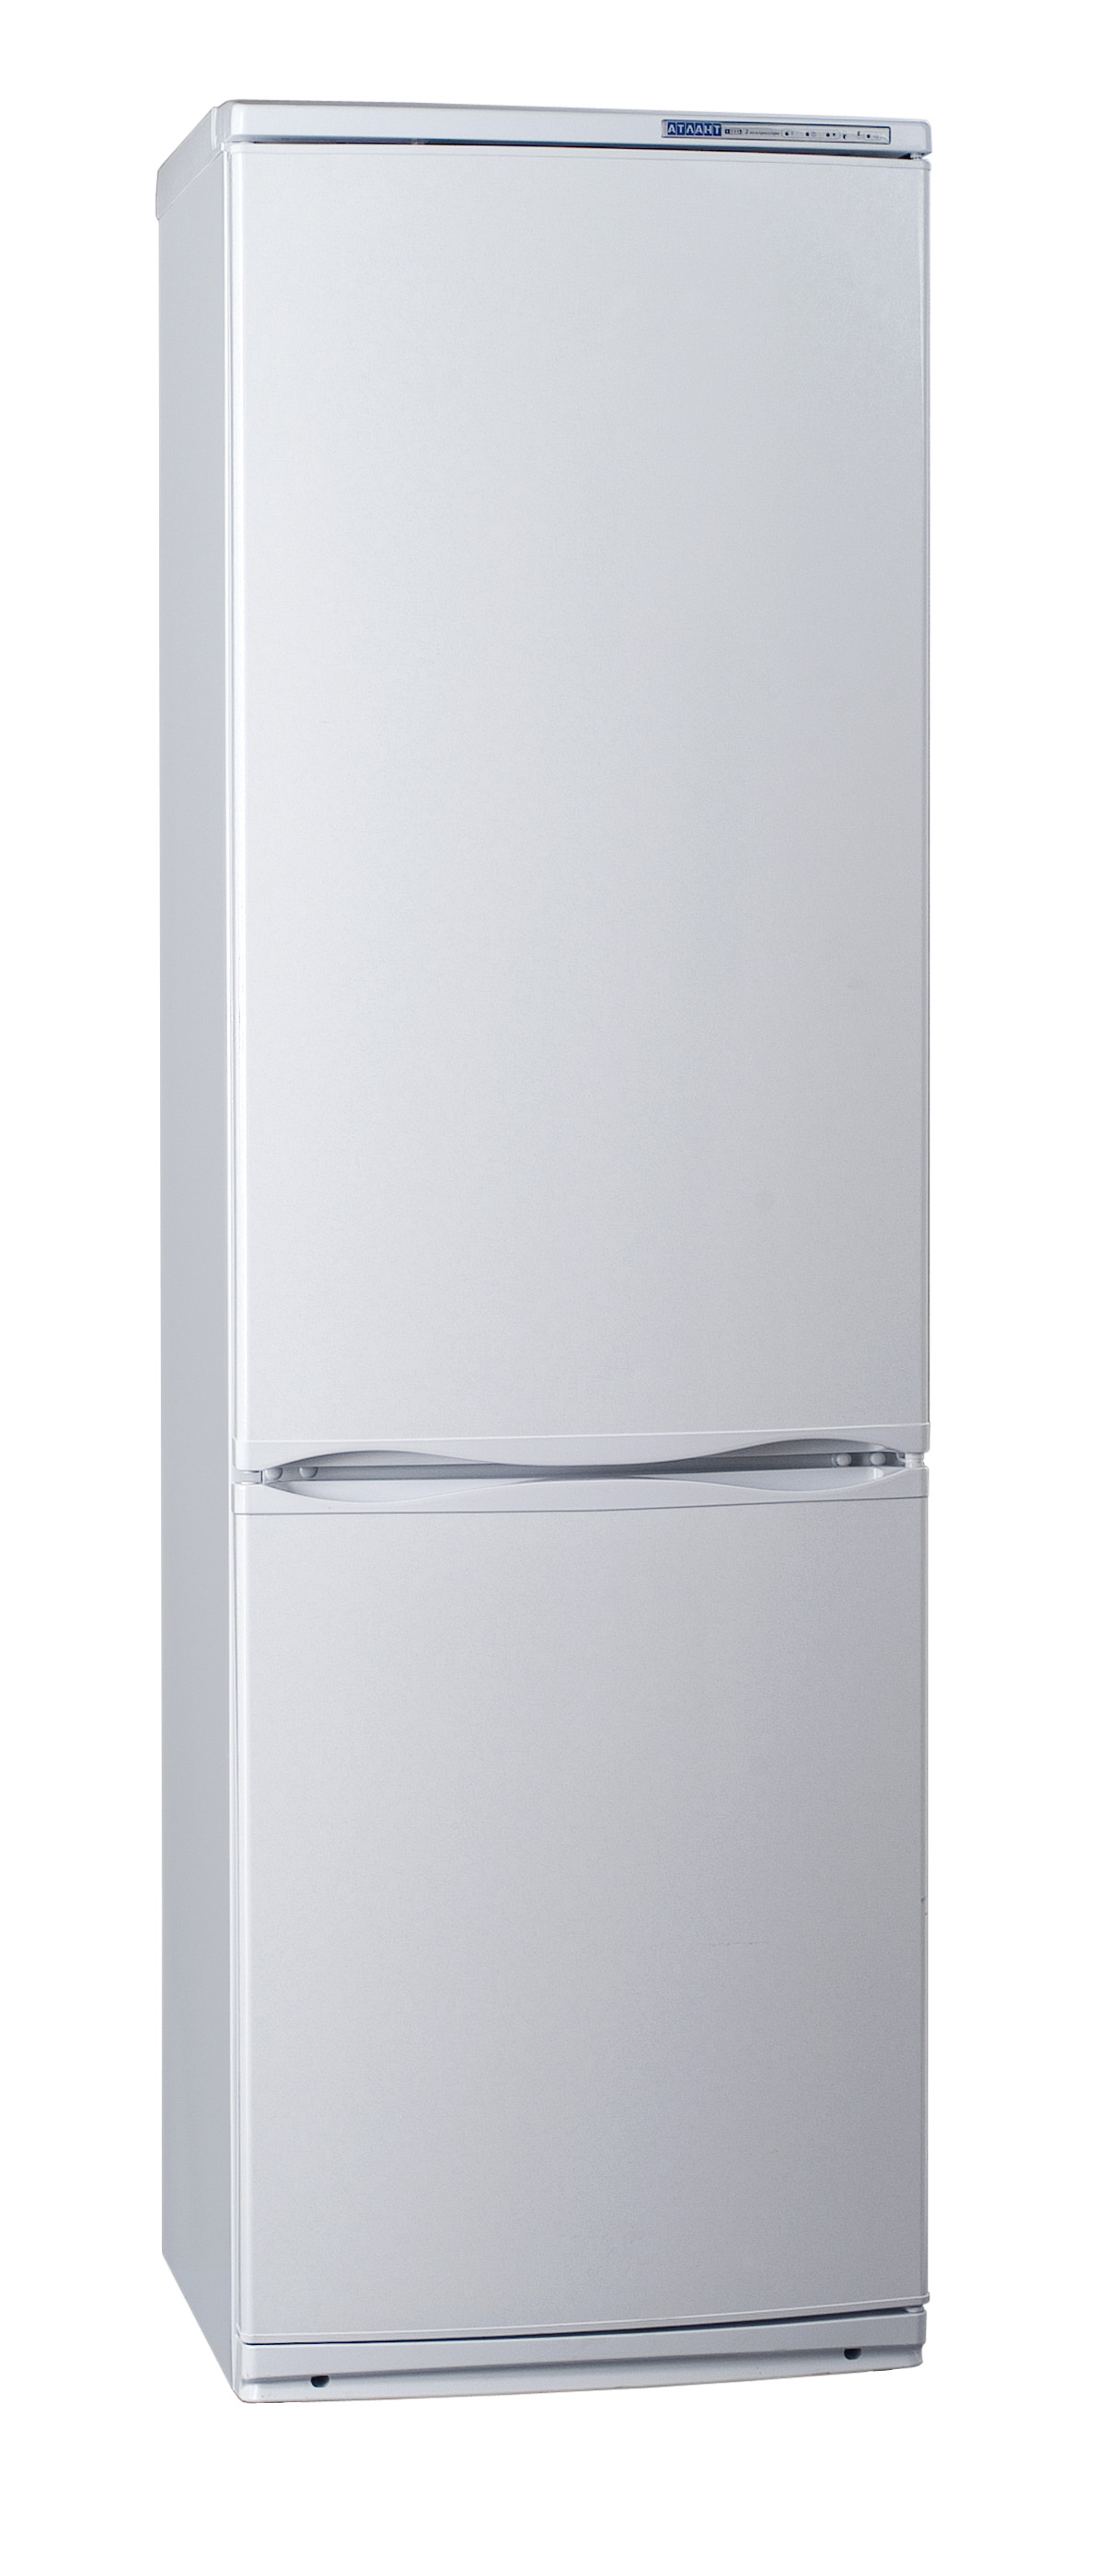 Холодильник Атлант 6024.031, цвет белый 100929 - фото 1